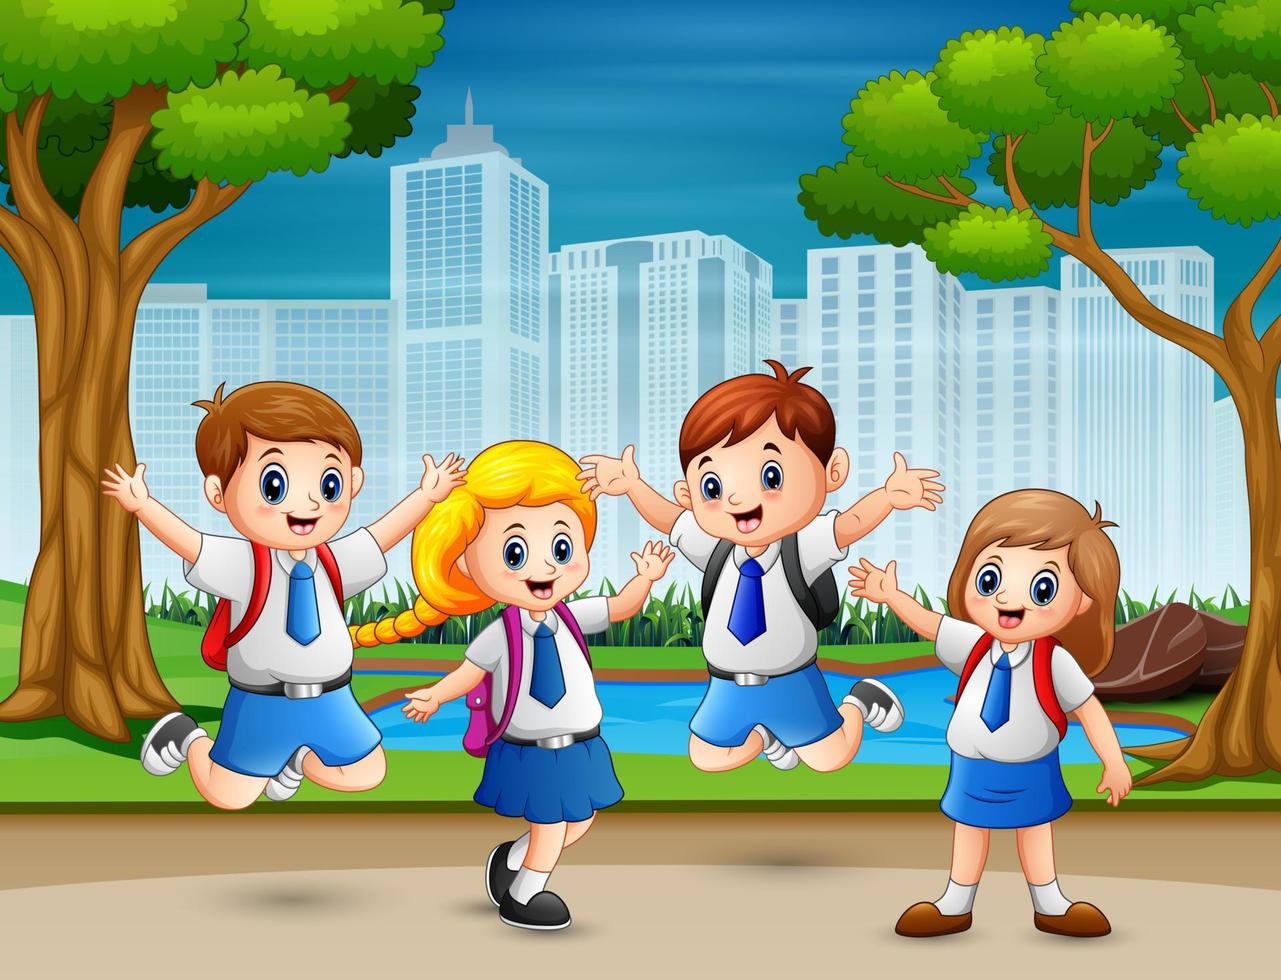 bambini divertenti in uniforme scolastica al parco vettore